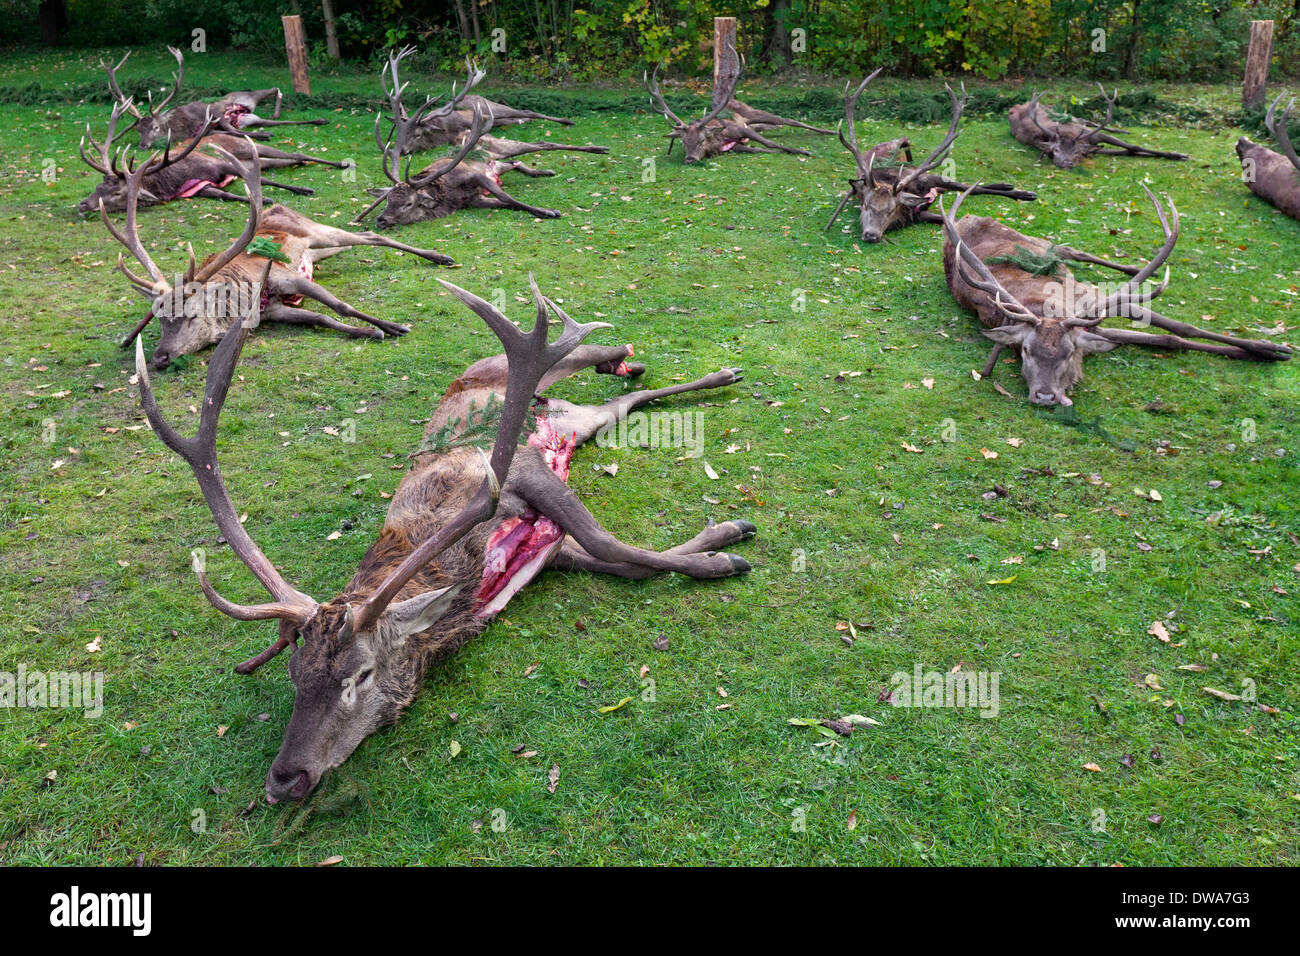 Dead Deer Stock Photos & Dead Deer Stock Images - Alamy